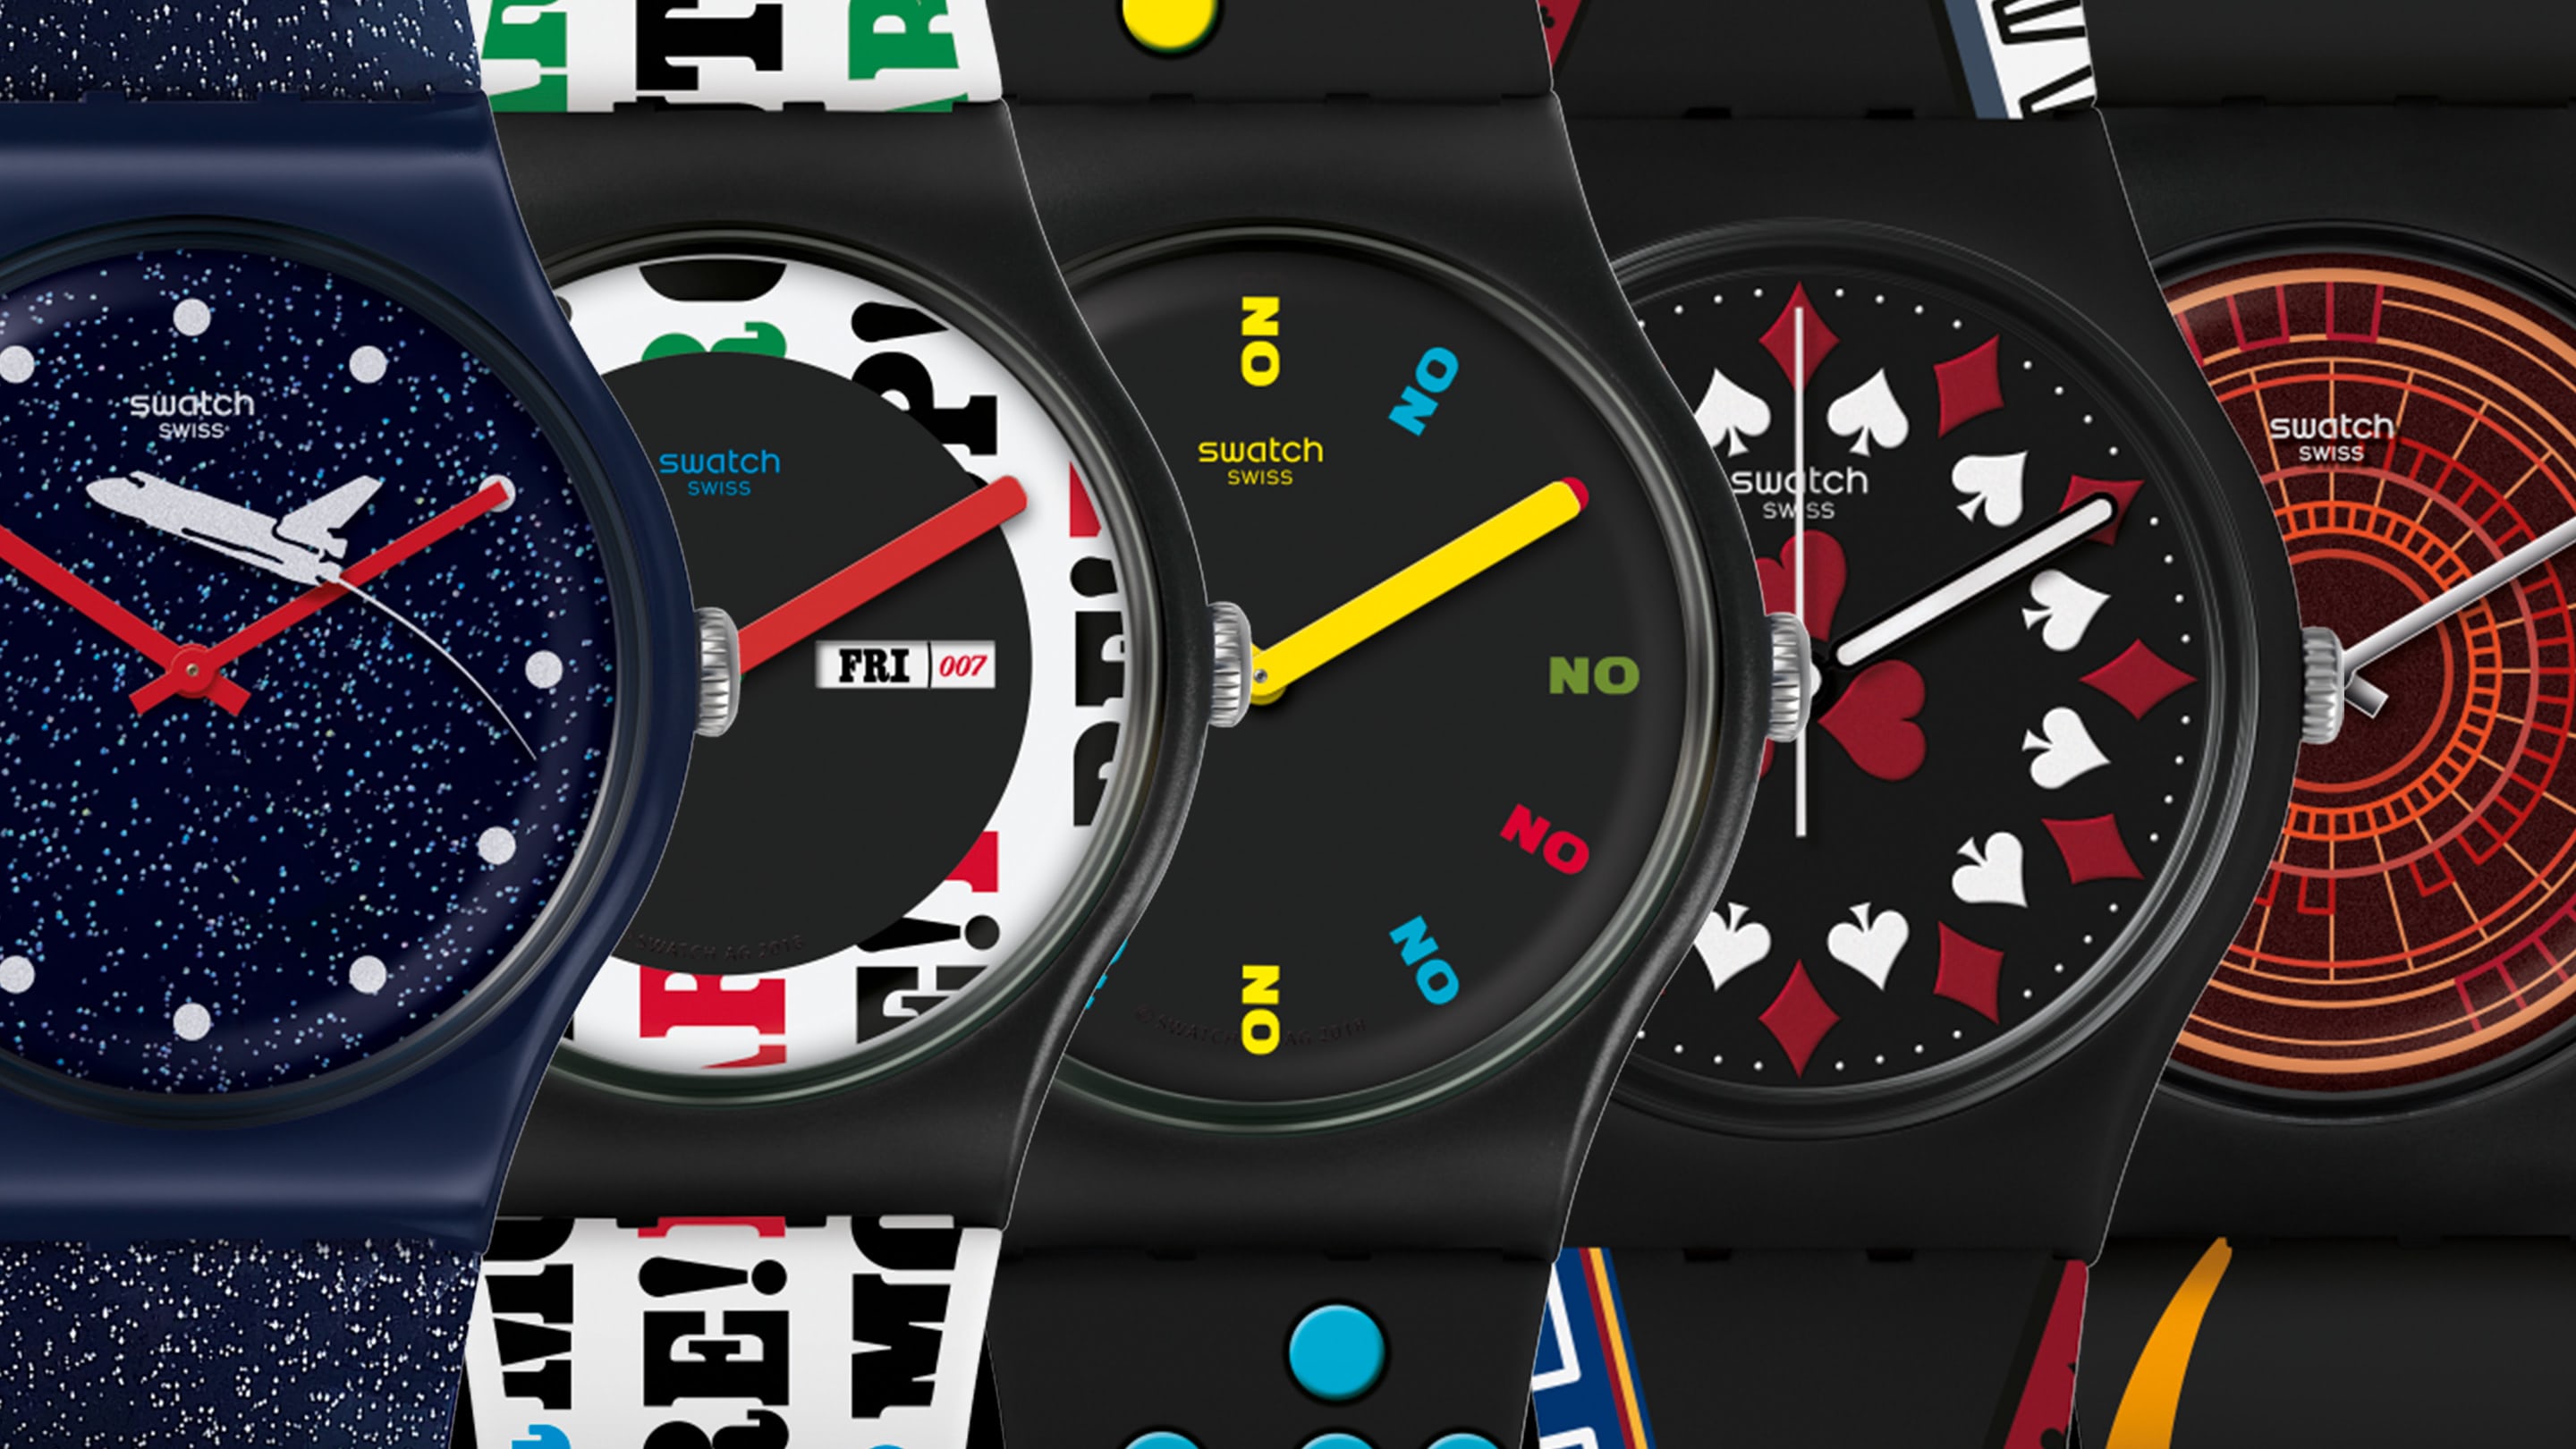 Moto 360's best watch face borrows from James Bond in GoldenEye 007